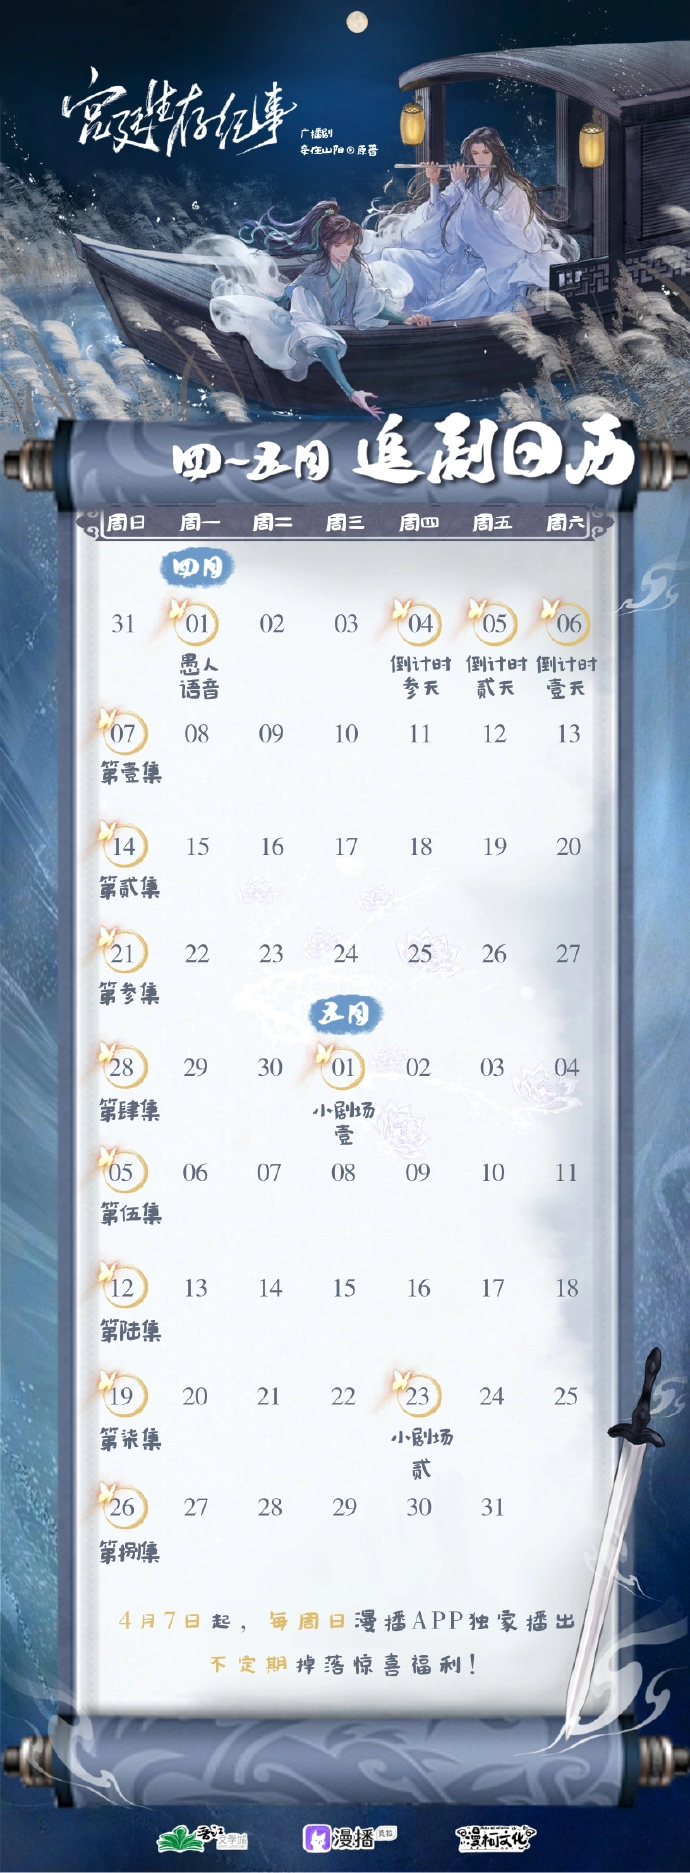 广播剧《宫廷生存纪事》追剧日历一览 4月7日起每周日漫播app更新